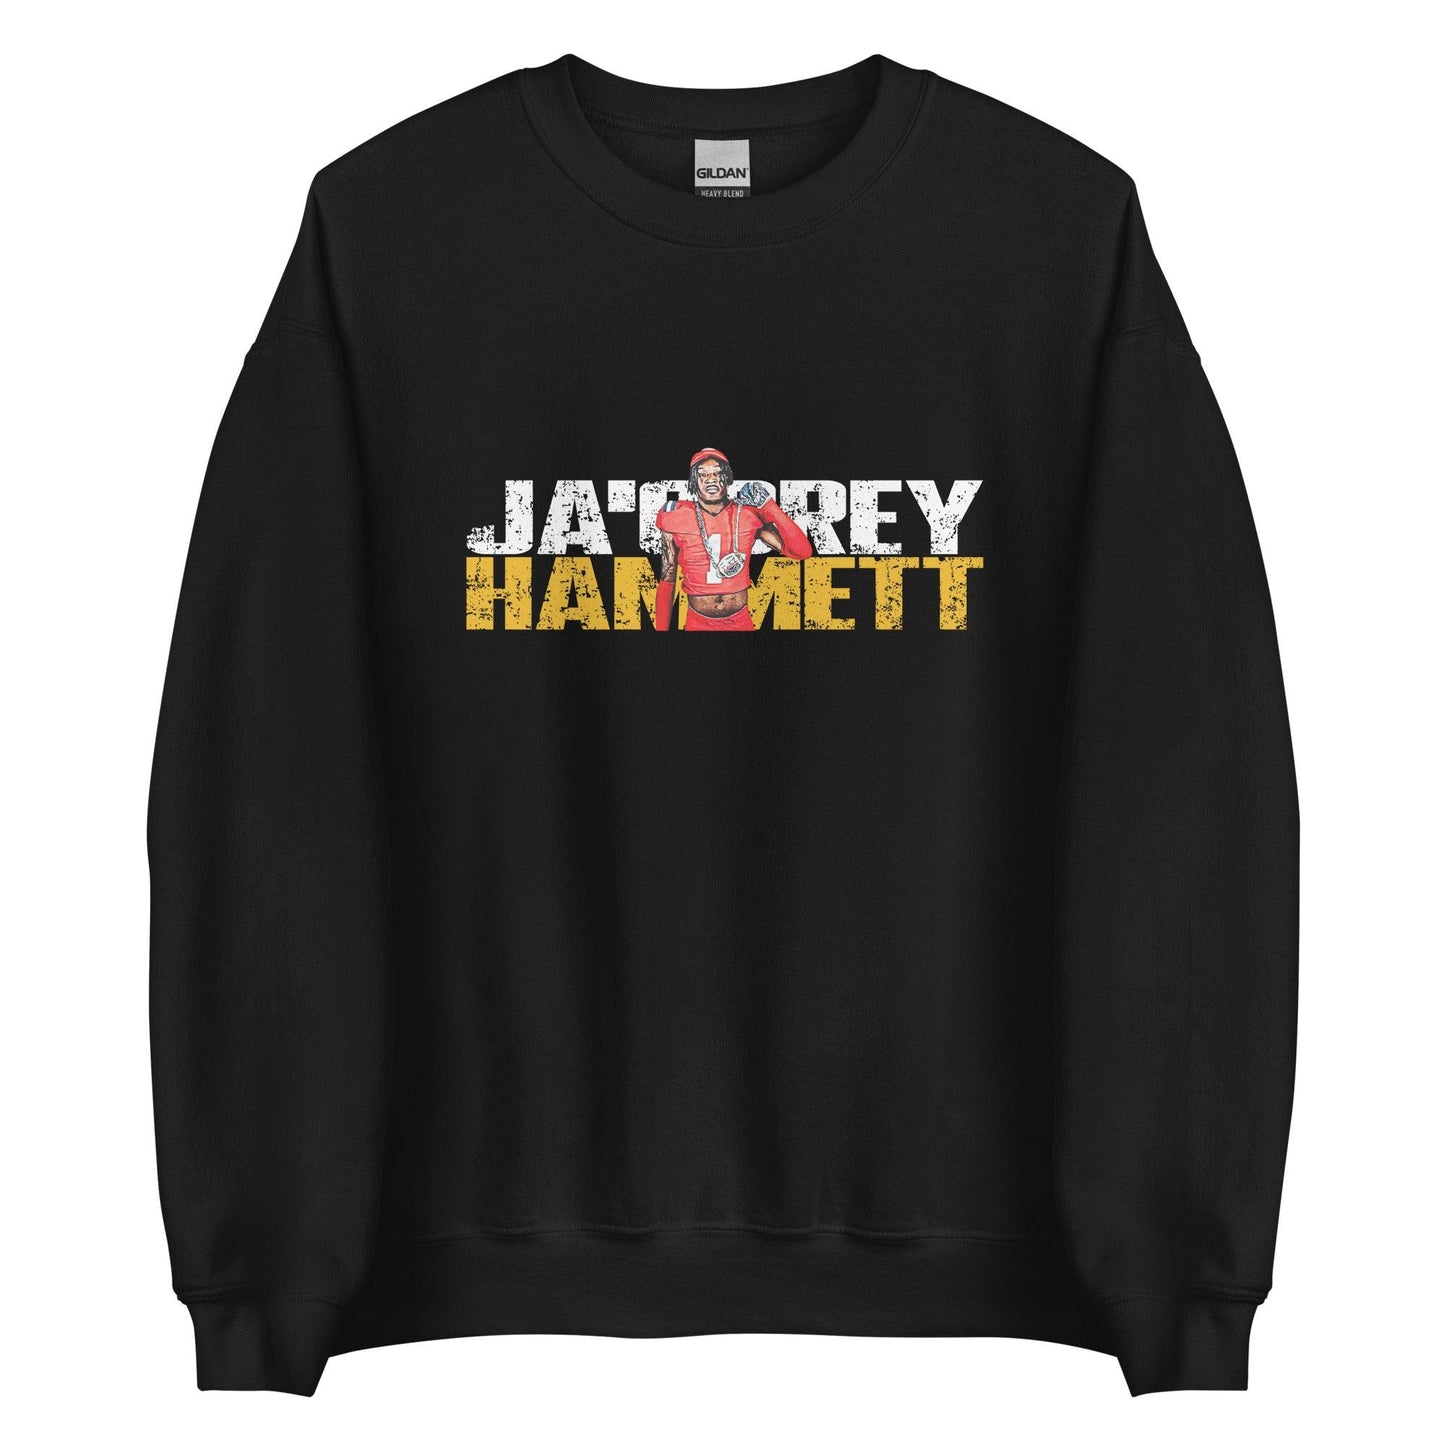 JaCorey Hammett "Gameday" Sweatshirt - Fan Arch